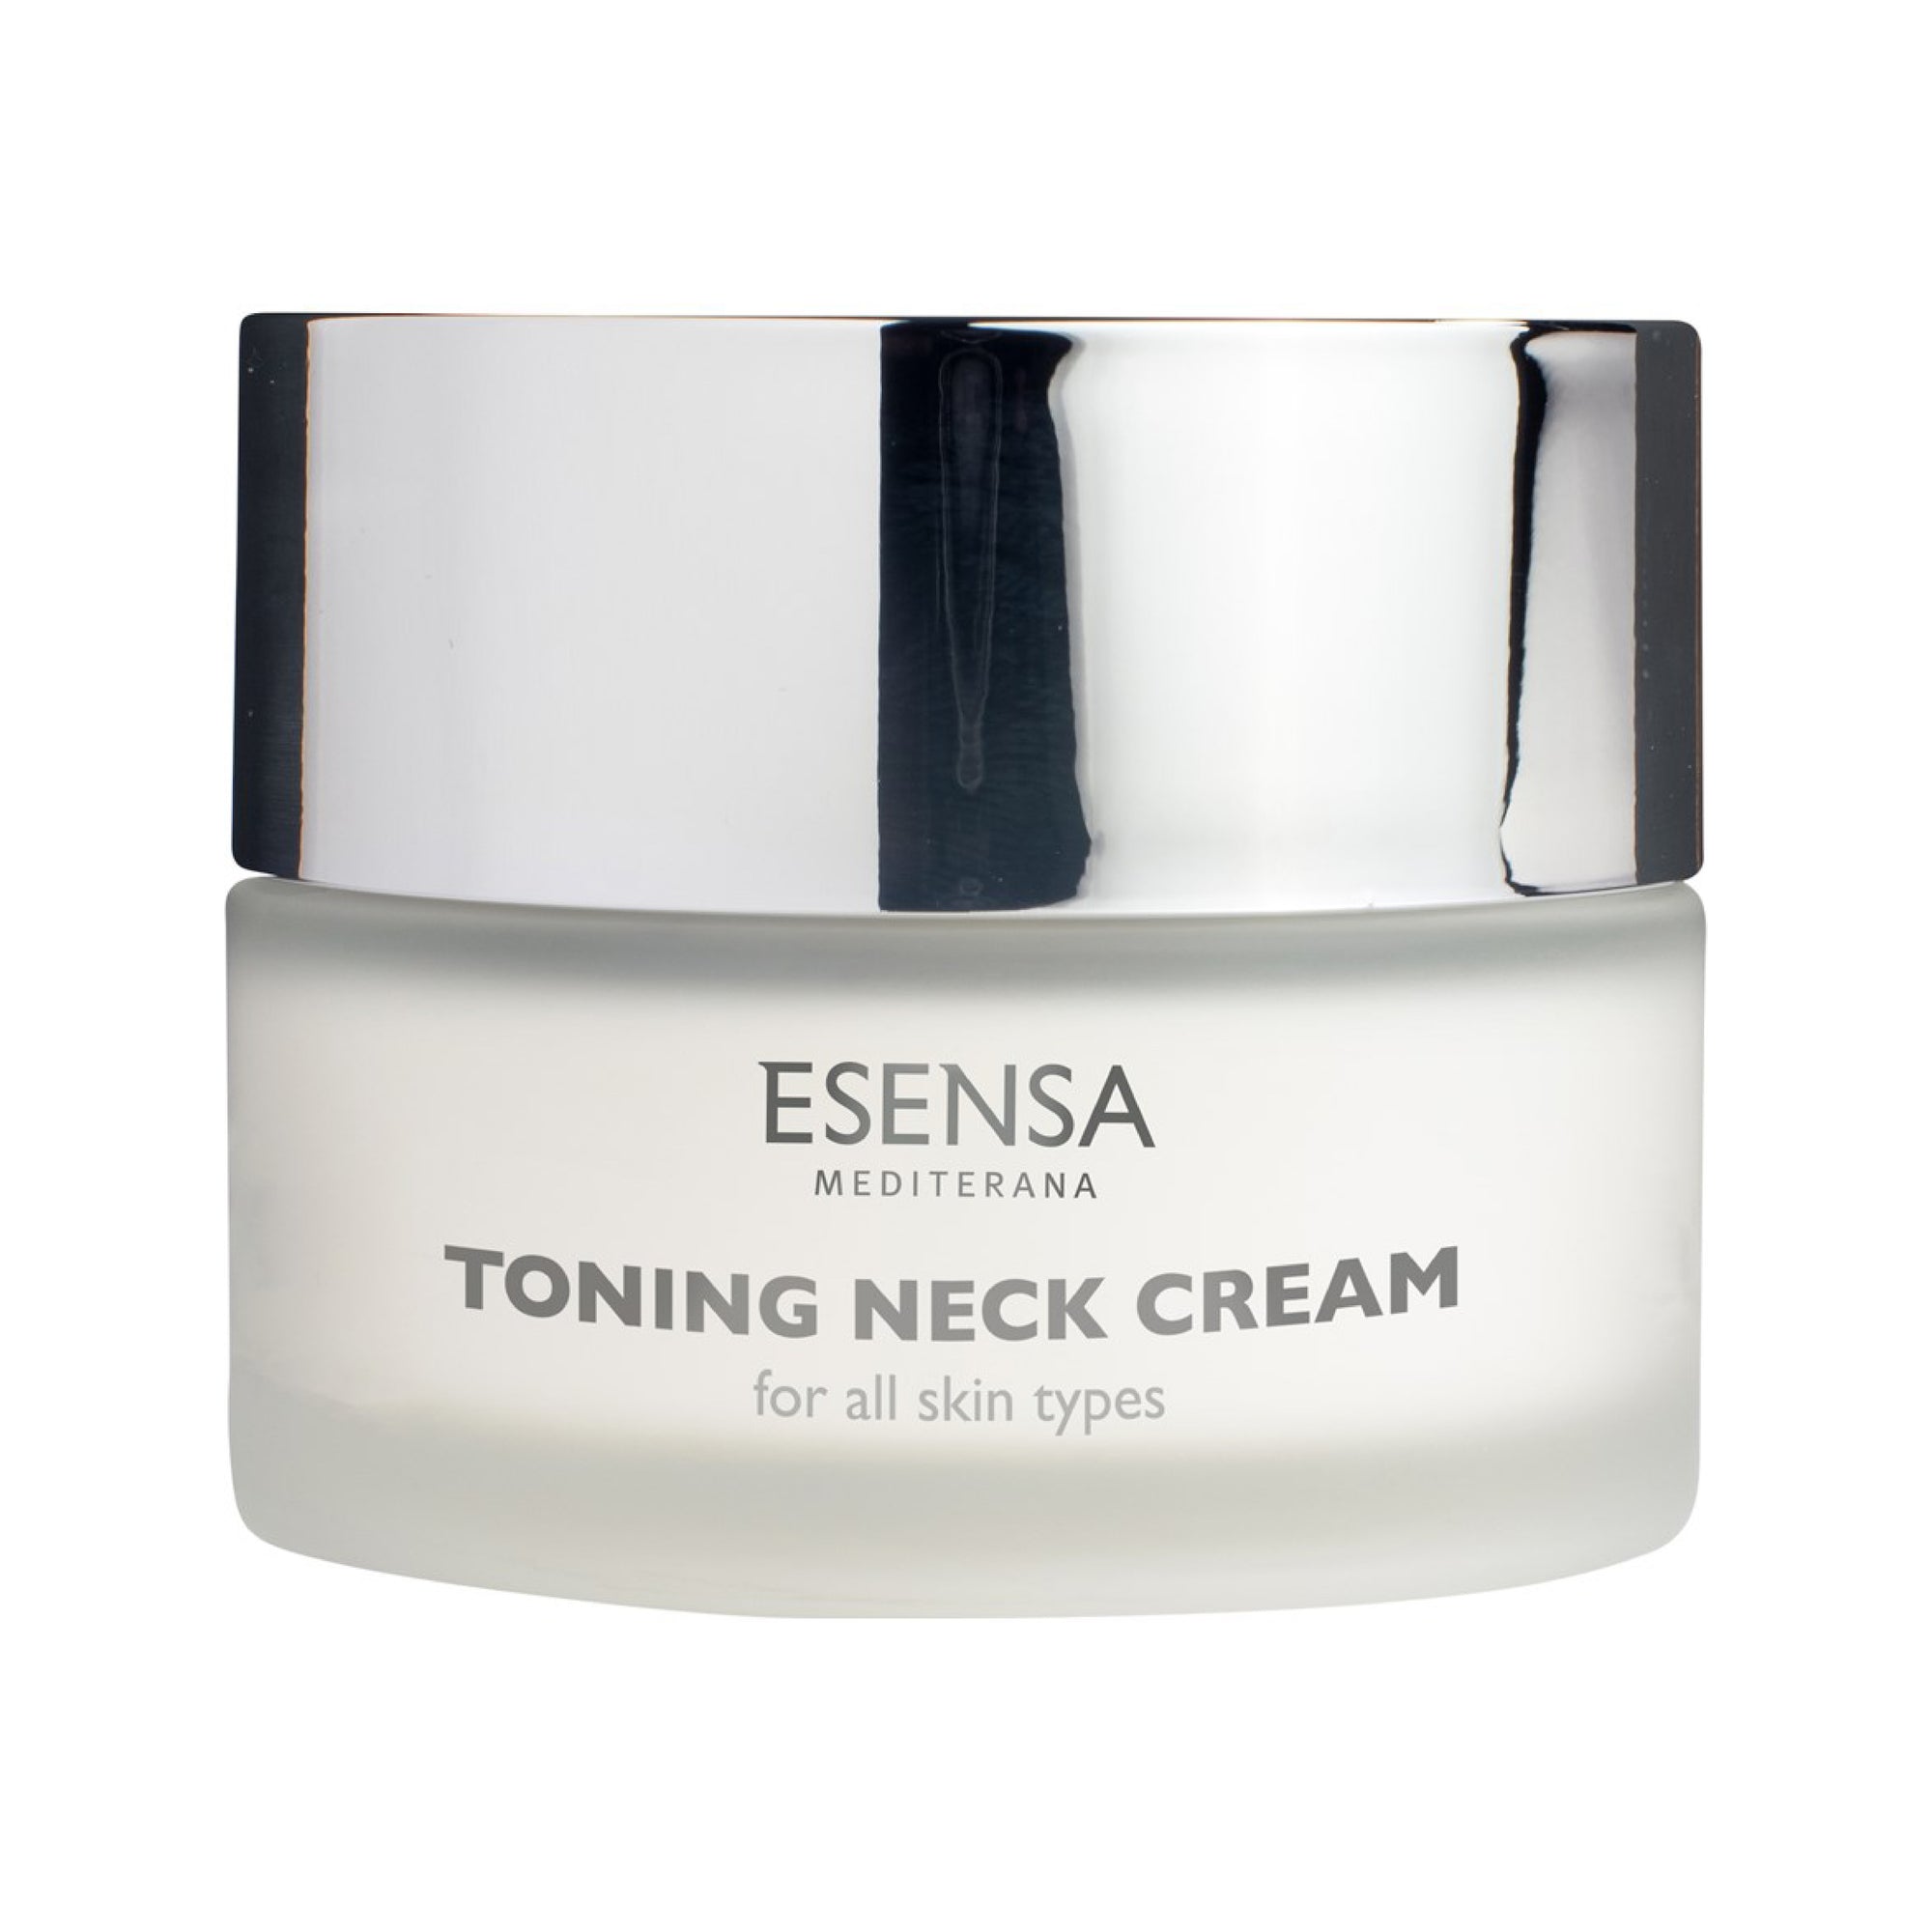 Toning Neck Cream │ Revitalizing anti-aging care